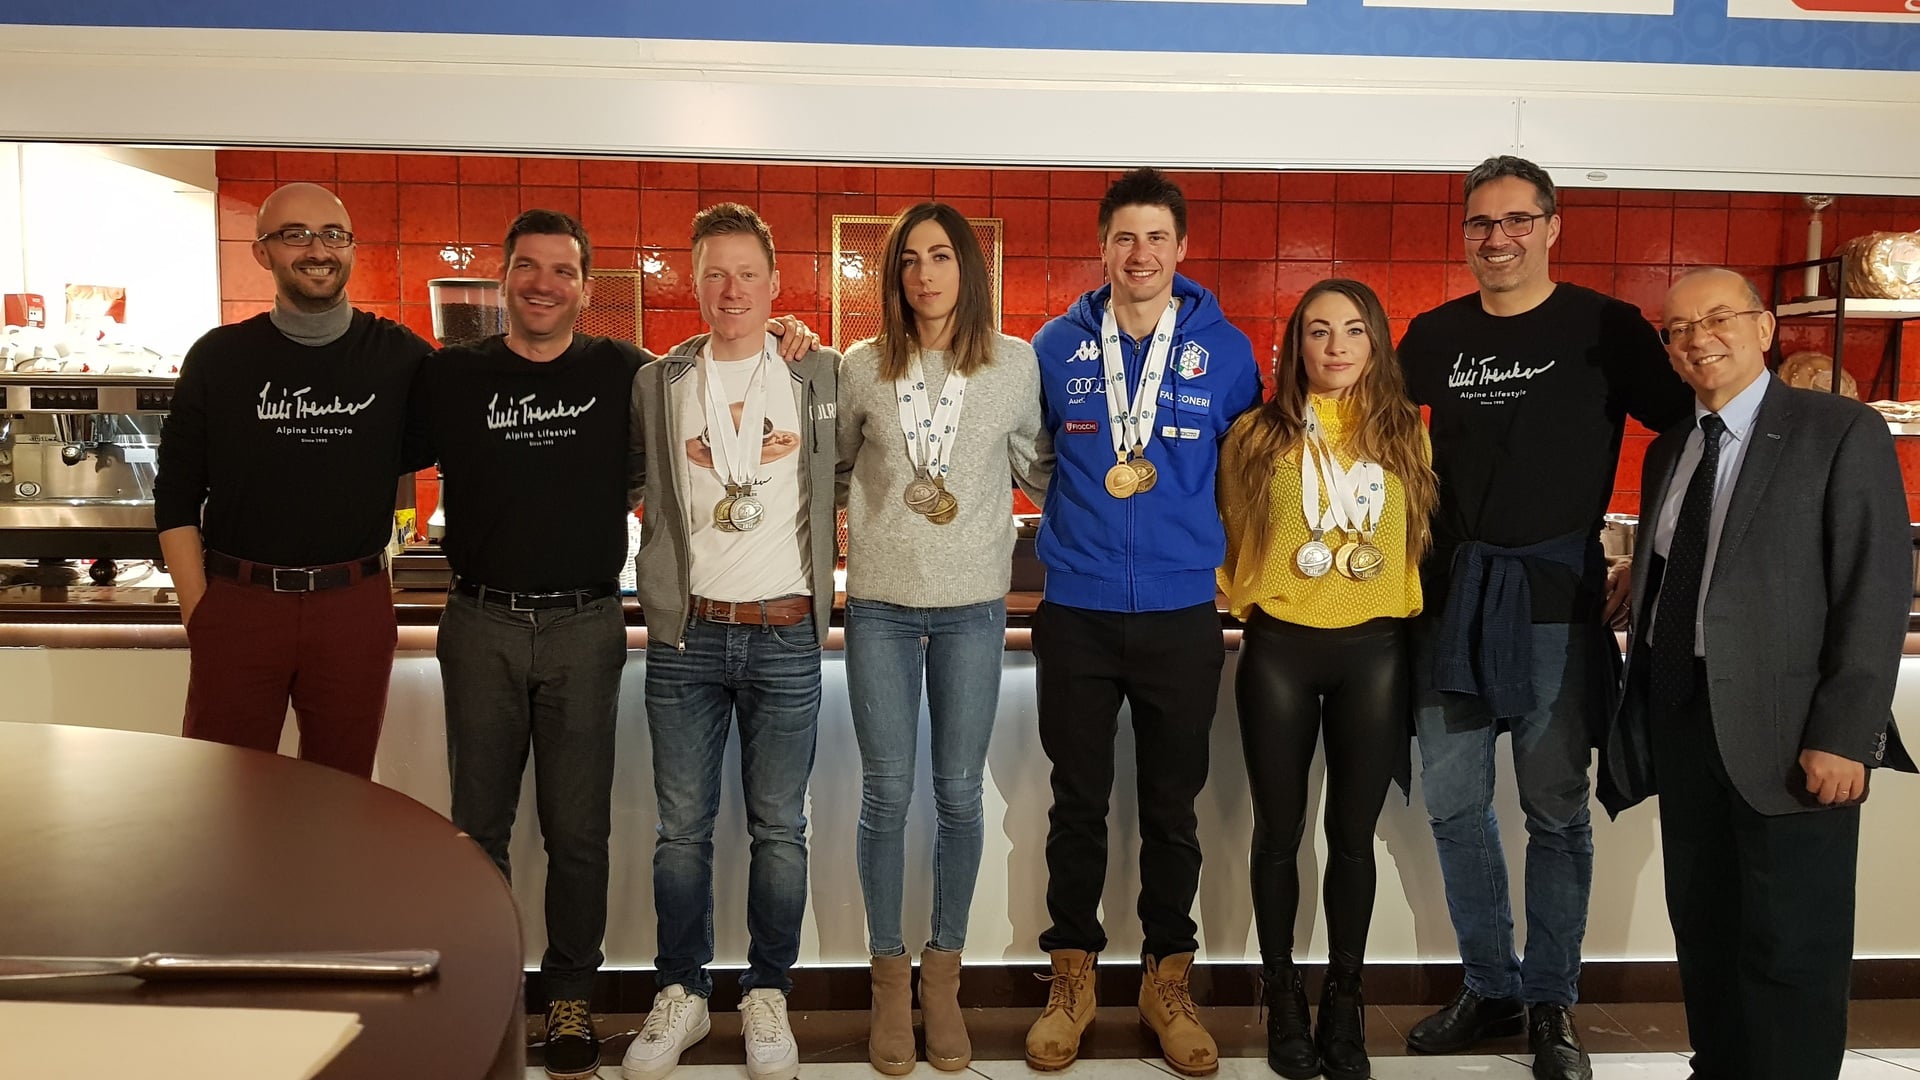 17.03.2019 - Große Abschlussparty im Antholz House mit allen italienischen Medaillengewinnern der WM in Östersund